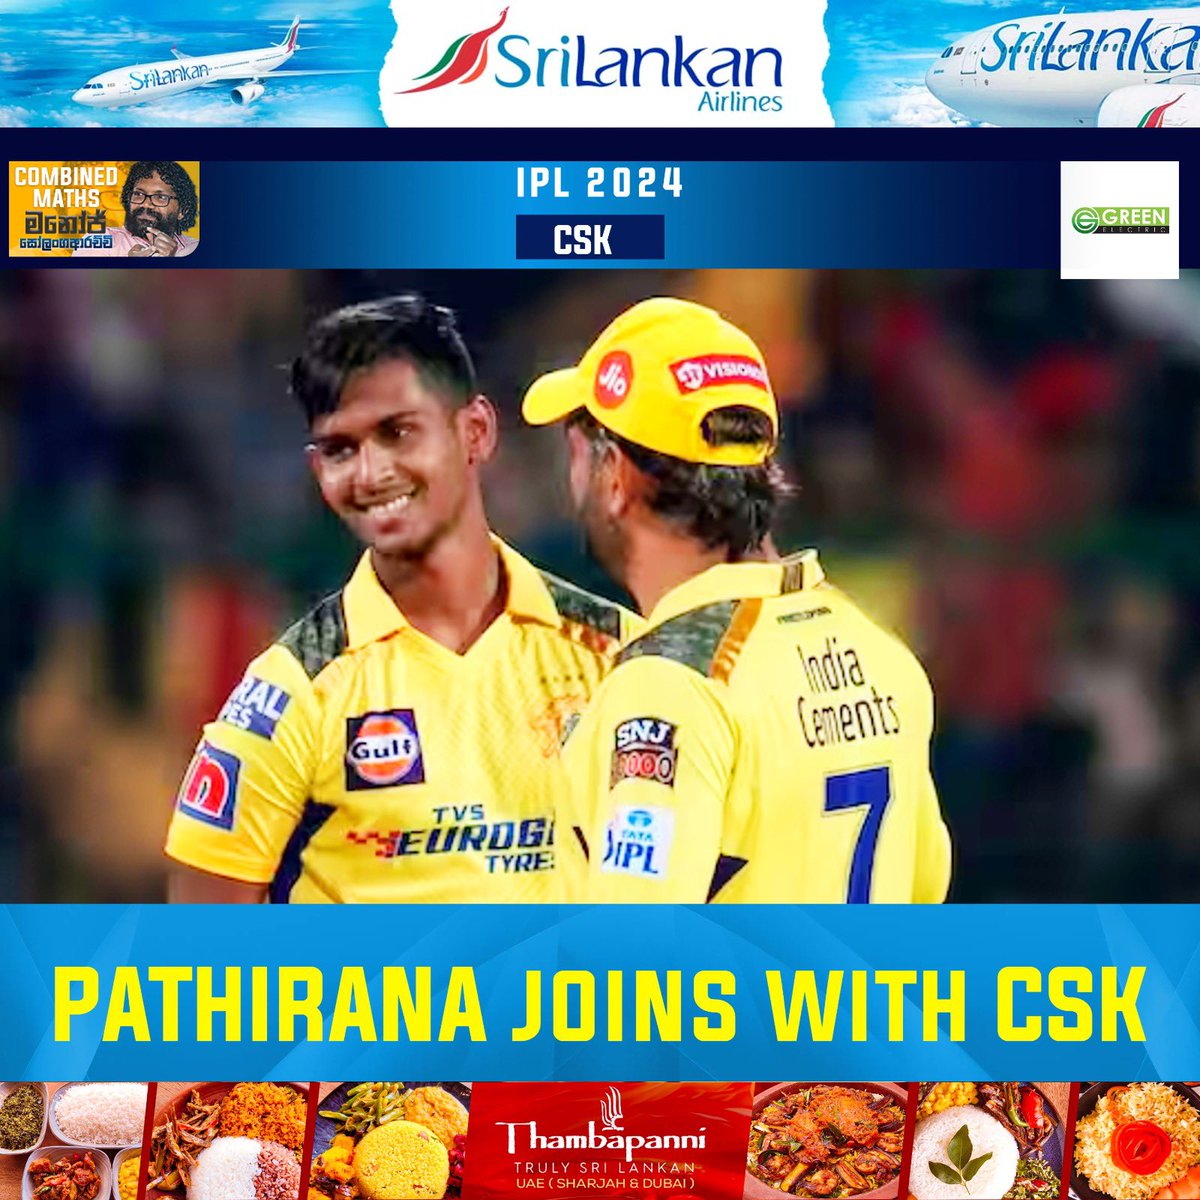 🇱🇰 ⚾️ @matheesha_9 has joined with CSK Squad for IPL 2024. 

#sportspavilionlk #IPL2024 #MatheeshaPathirana